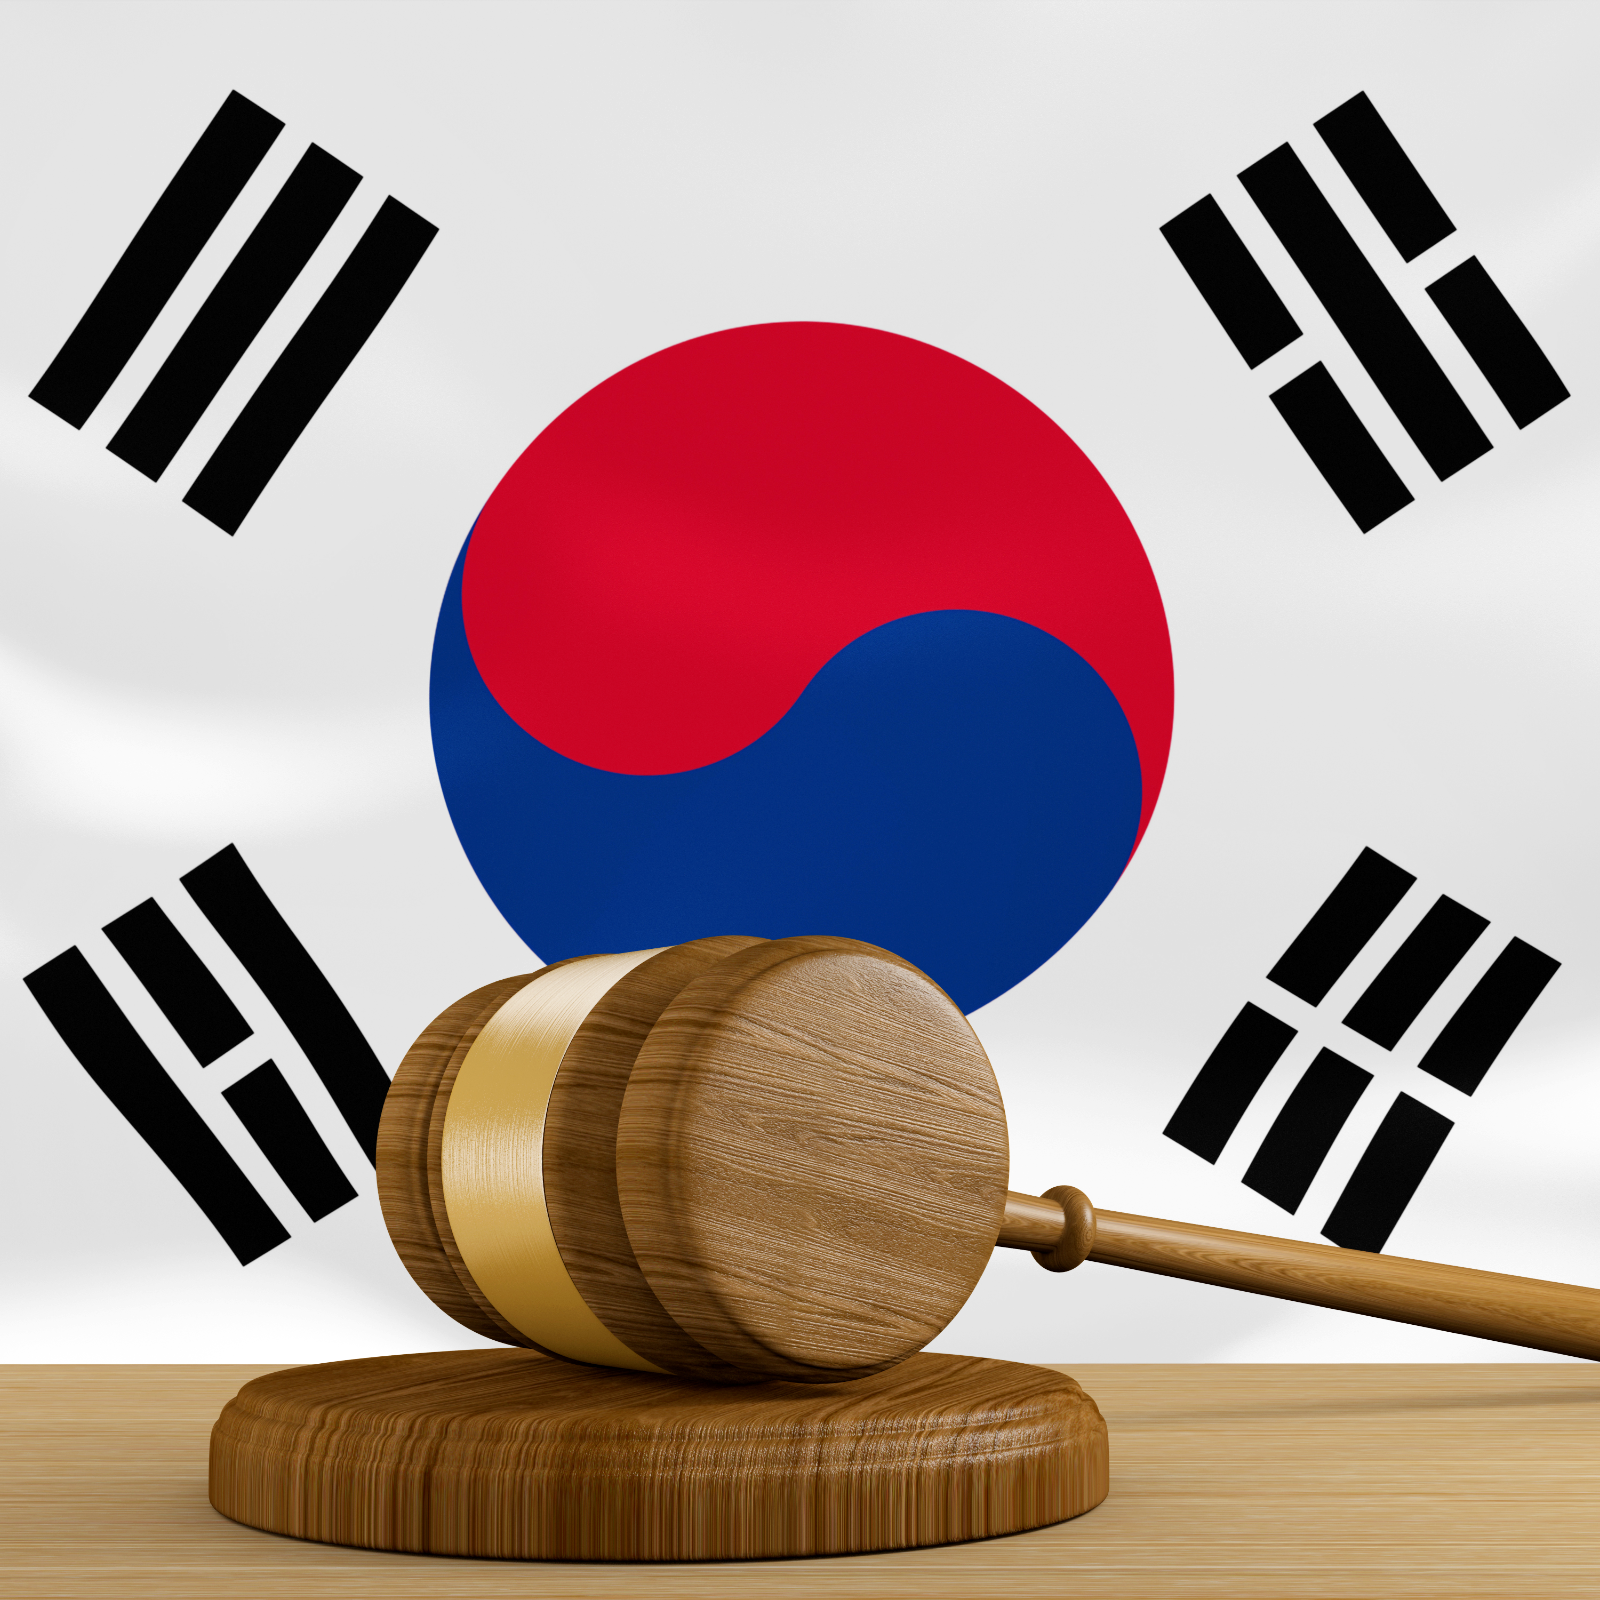 Korean Crypto Exchange Sued for Controversial Token Schemes